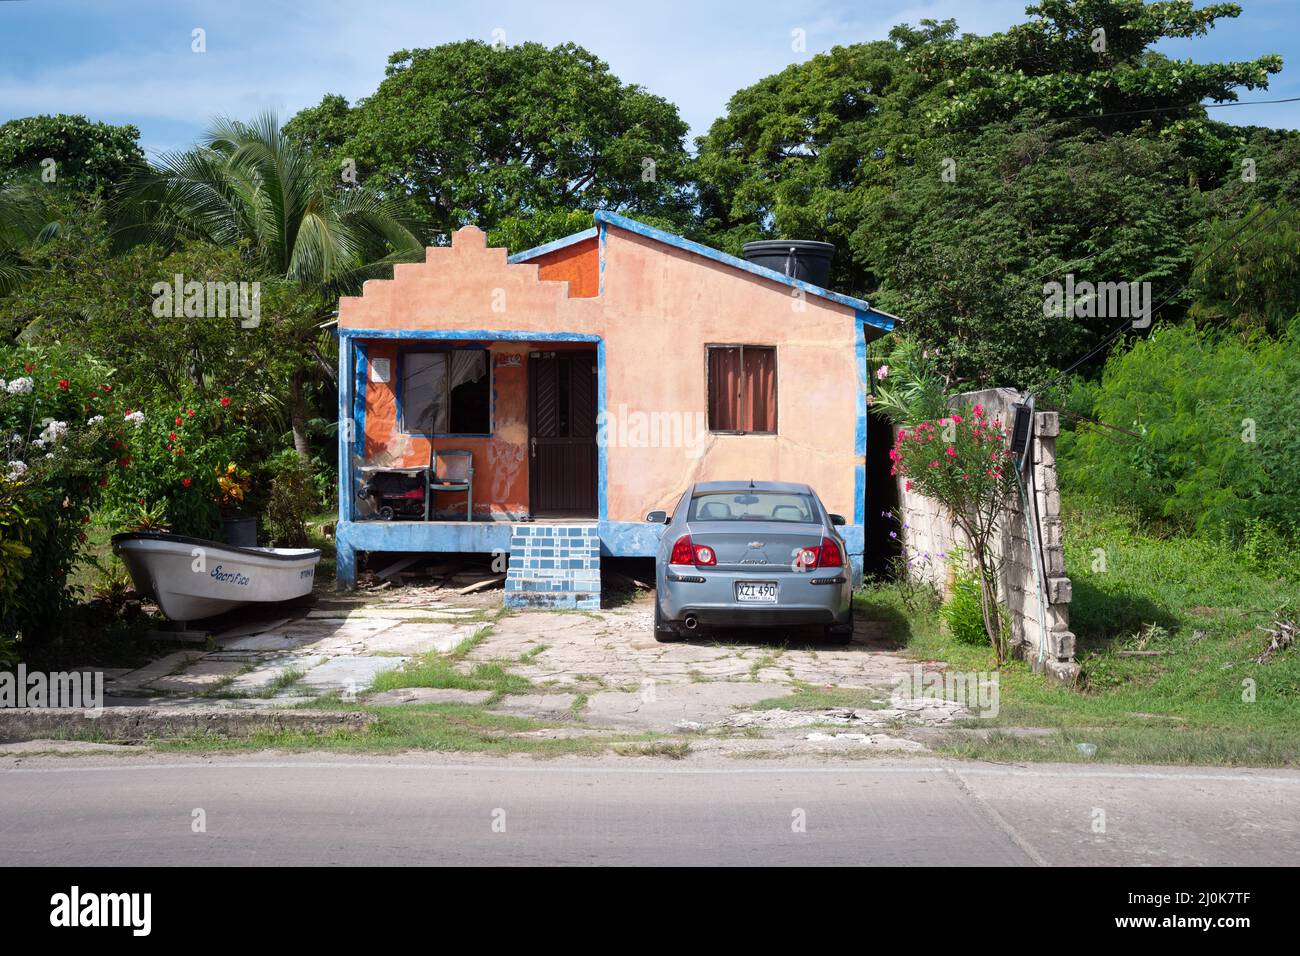 San Andrés, San Andrés y Providencia, Kolumbien - November 18 2021: Kleines Haus in weichem Orange mit einem Auto, das auf dem Hof in der Nähe eines Bootes geparkt ist Stockfoto